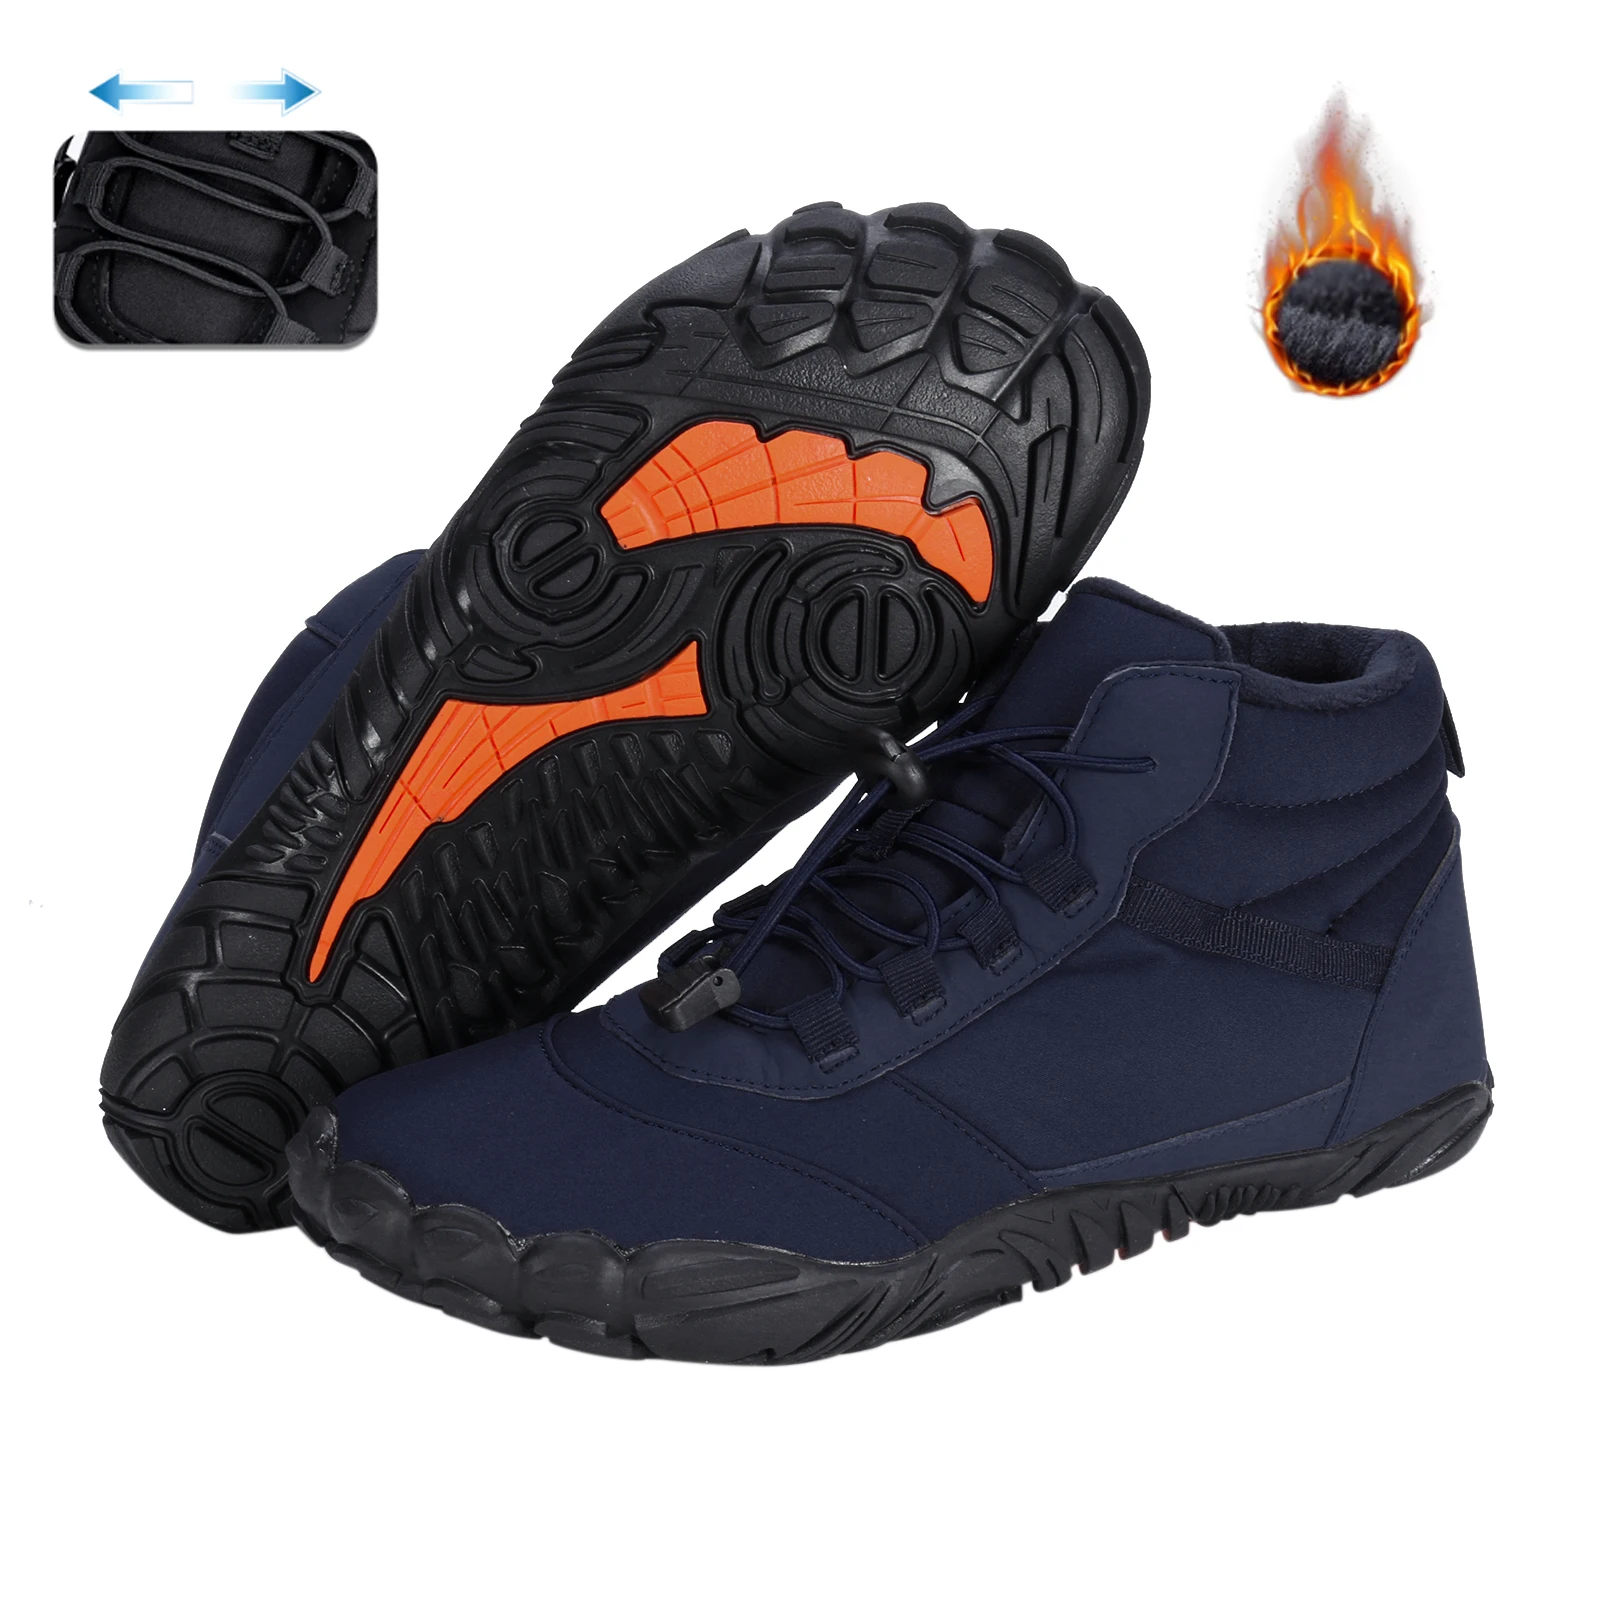 Kış Sıcak Koşu Sneakers Kadın Erkek Kauçuk Koşu Yalınayak Ayakkabı Su Geçirmez Kaymaz Nefes Trekking Tırmanma için - 0